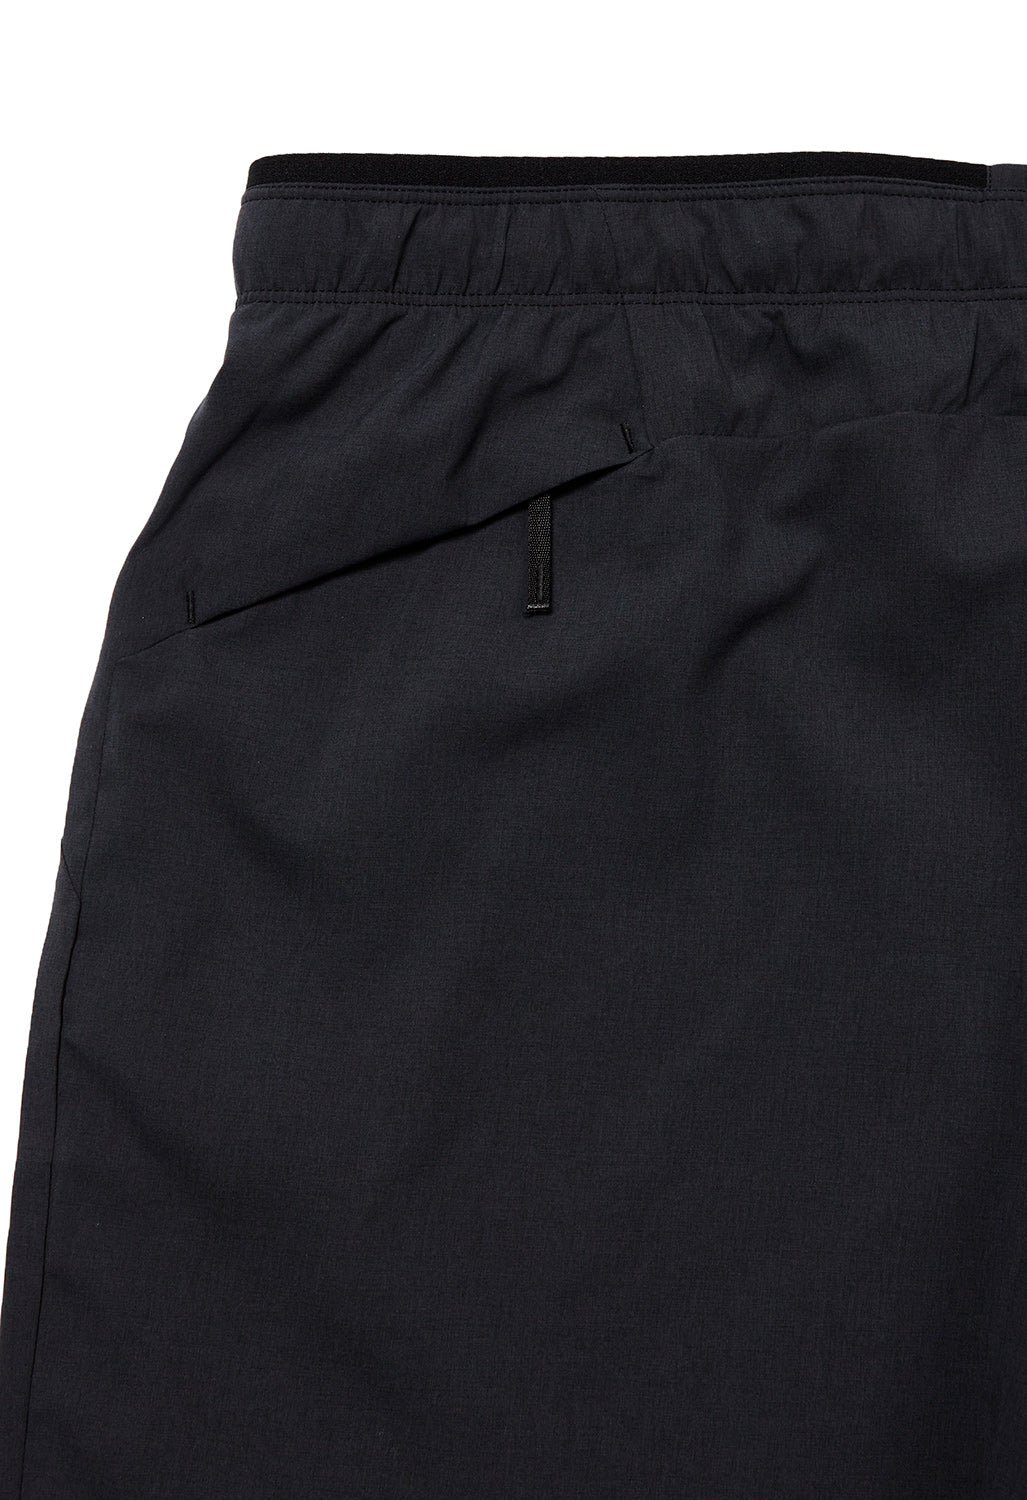 Arc'teryx Men's Norvan Shorts 9" - Black